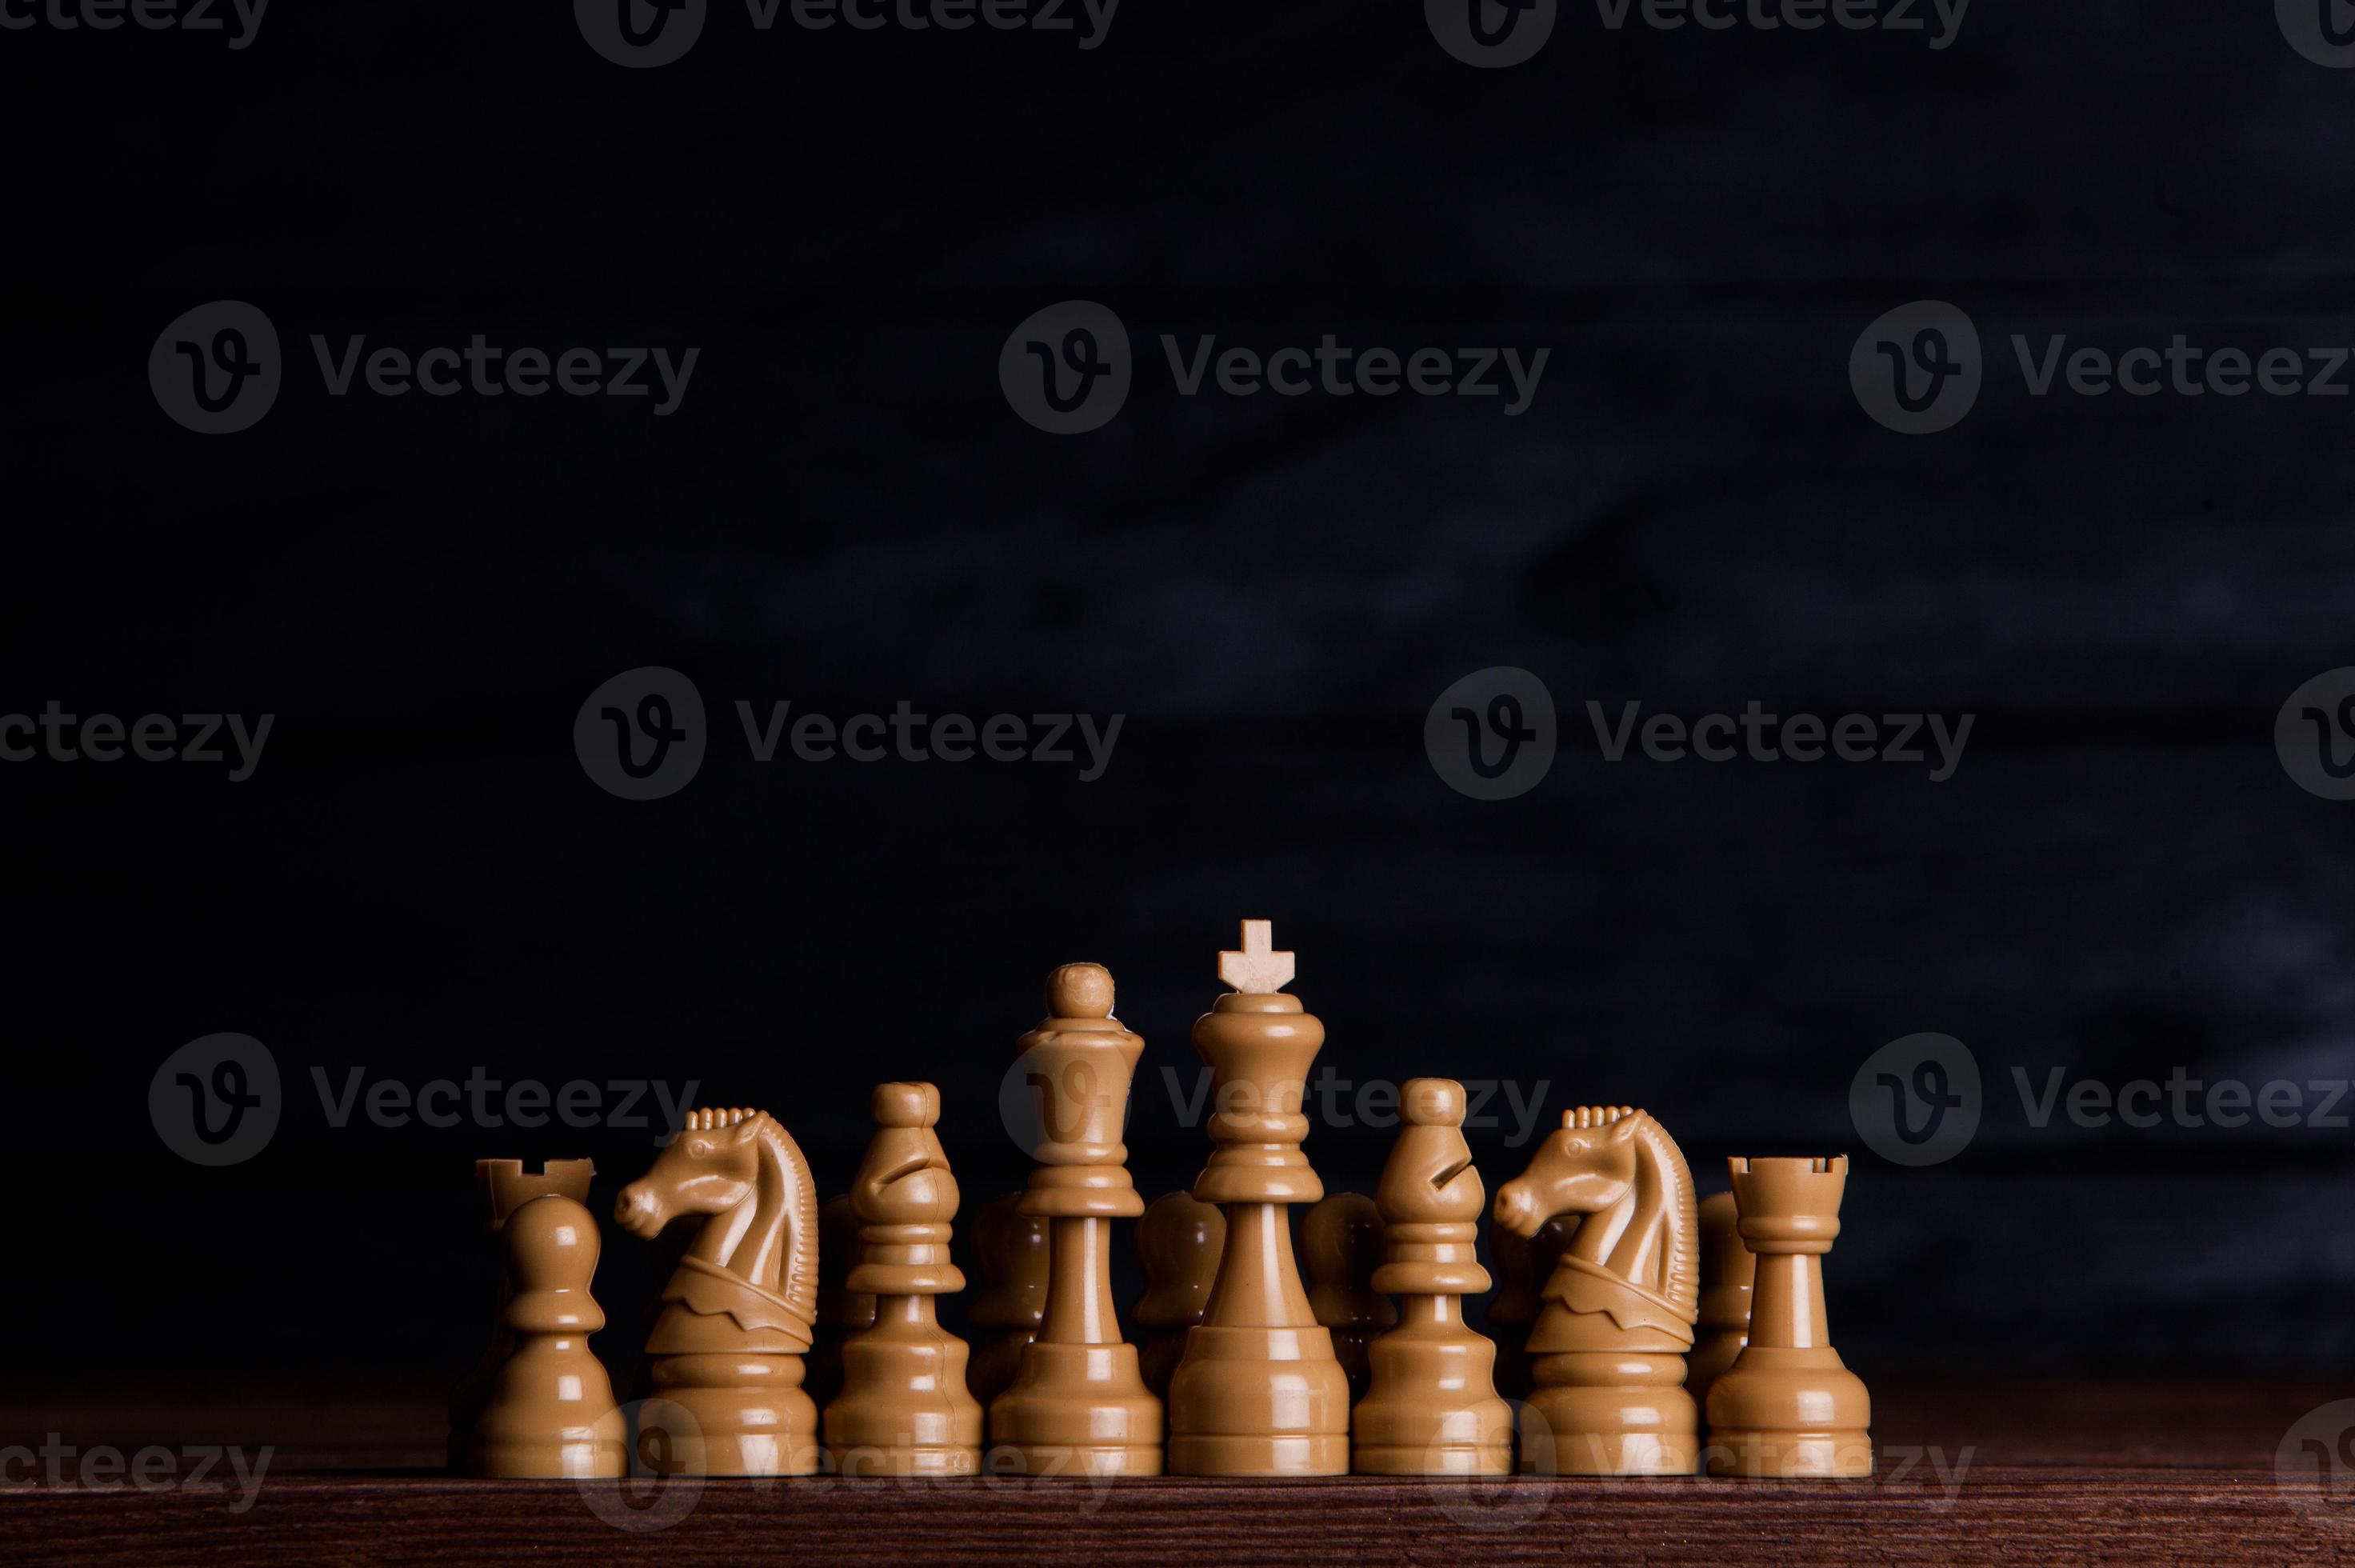 tabuleiro de xadrez com peças de xadrez. xadrez no fundo escuro